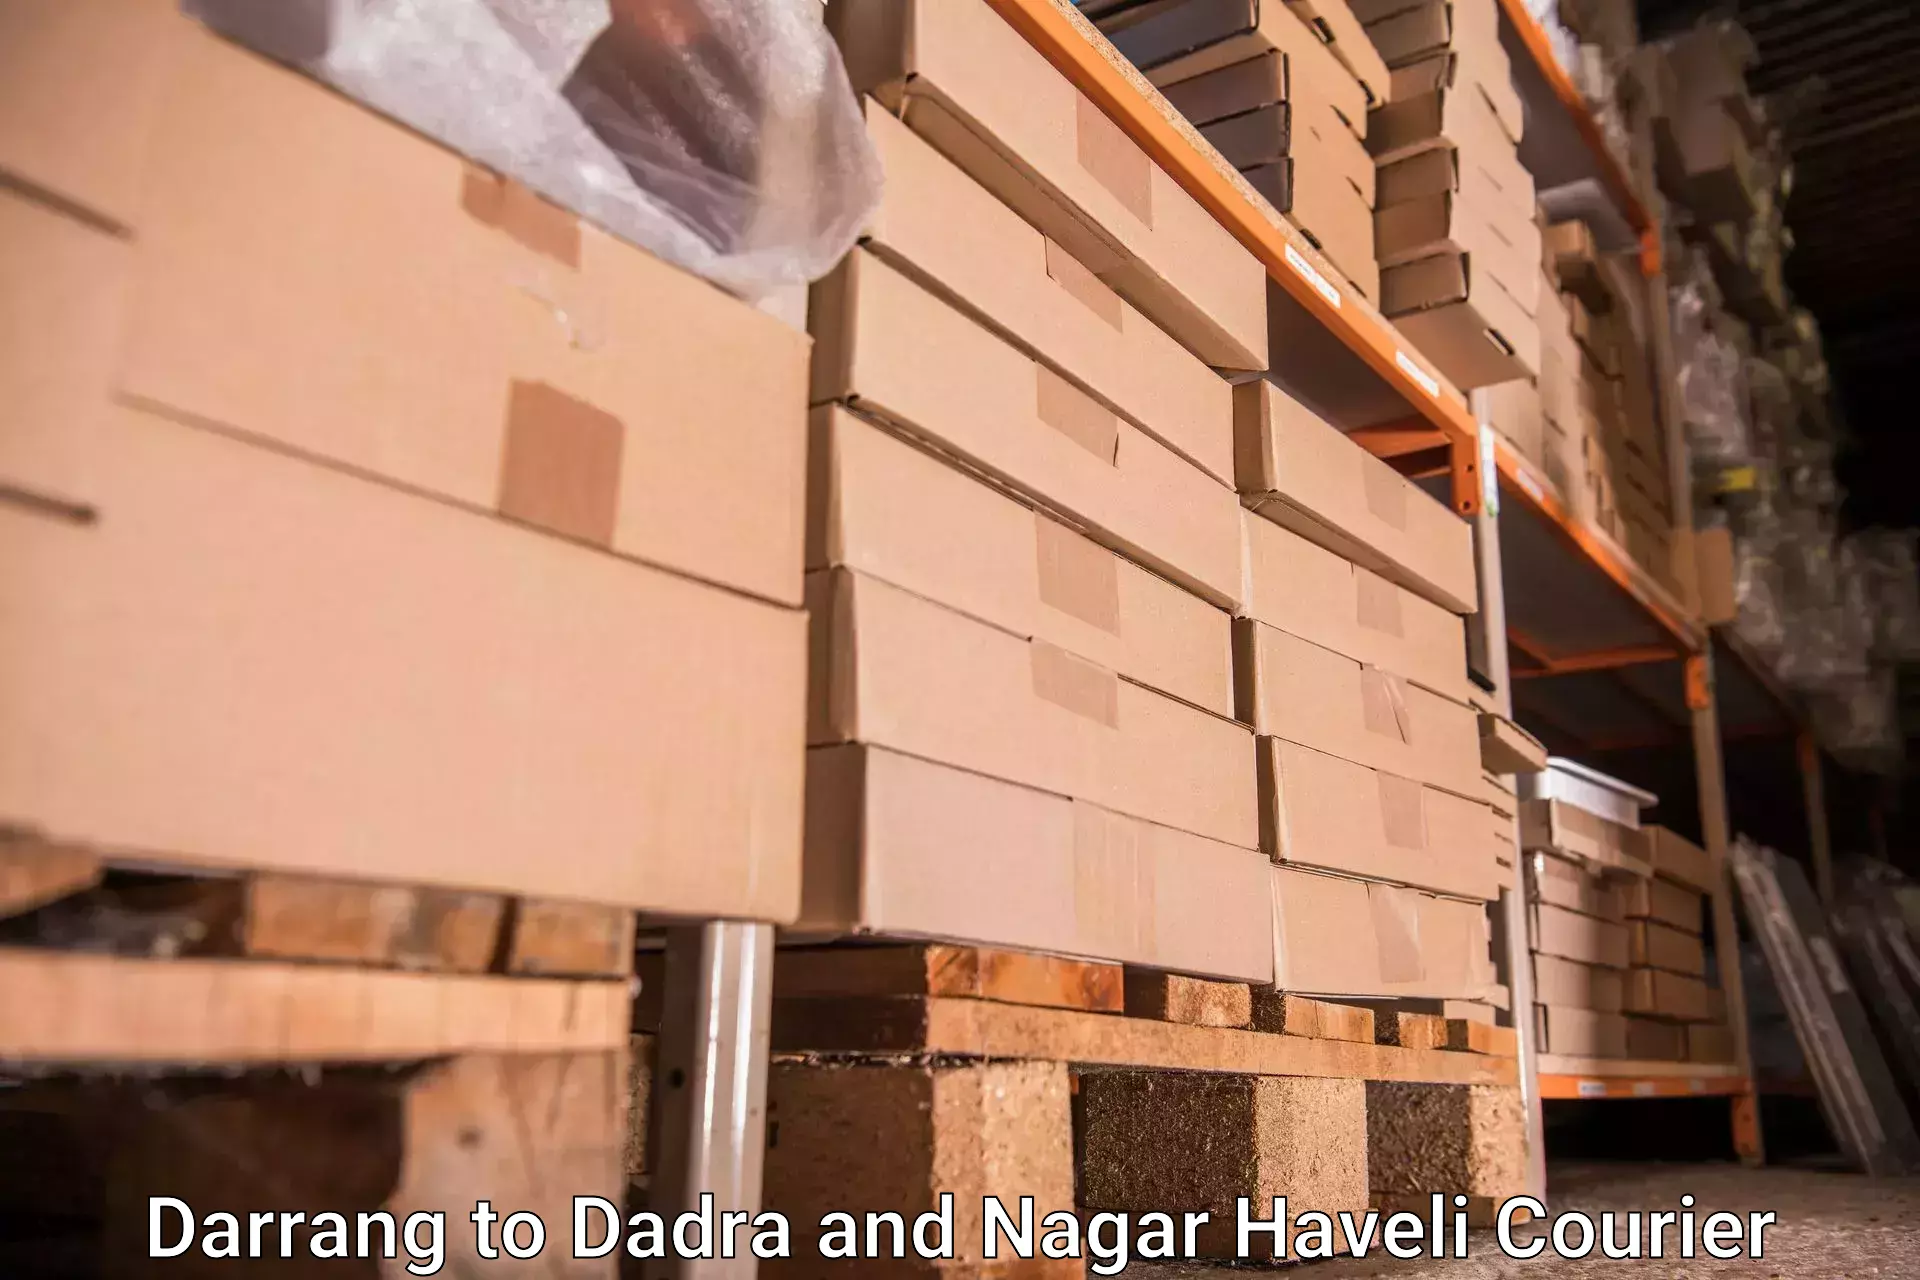 Baggage shipping service Darrang to Dadra and Nagar Haveli